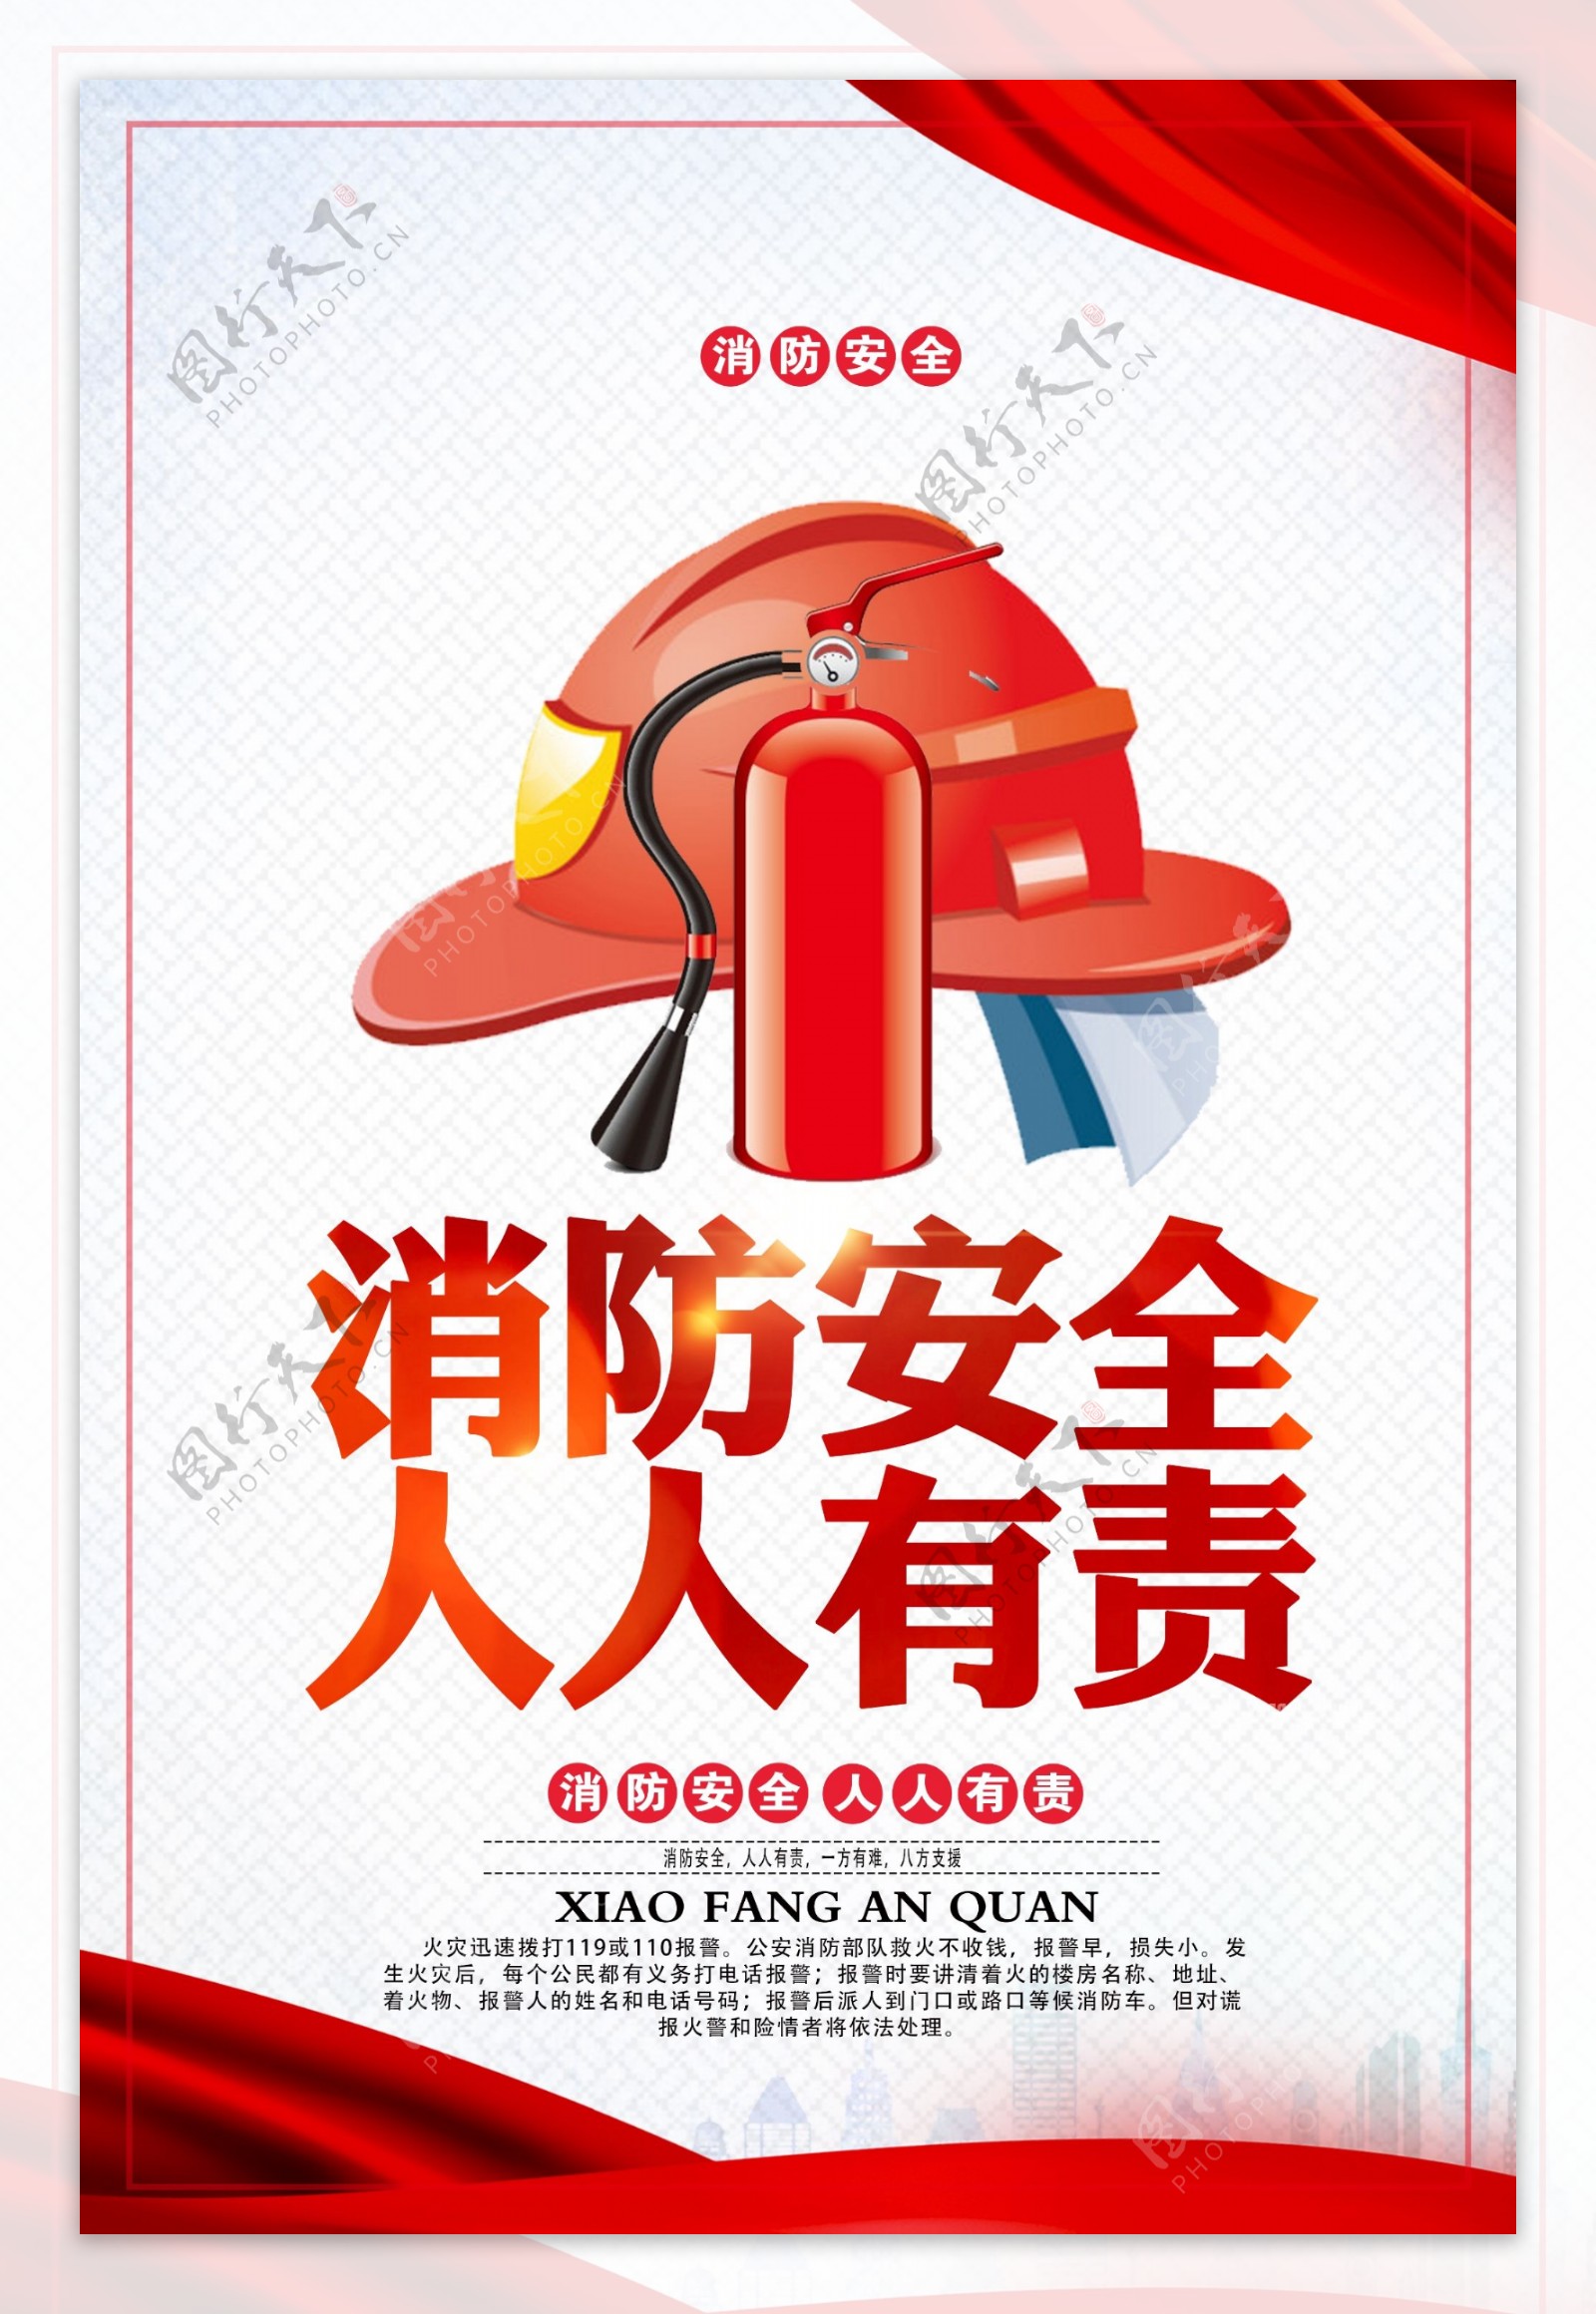 消防安全公益知识宣传海报素材